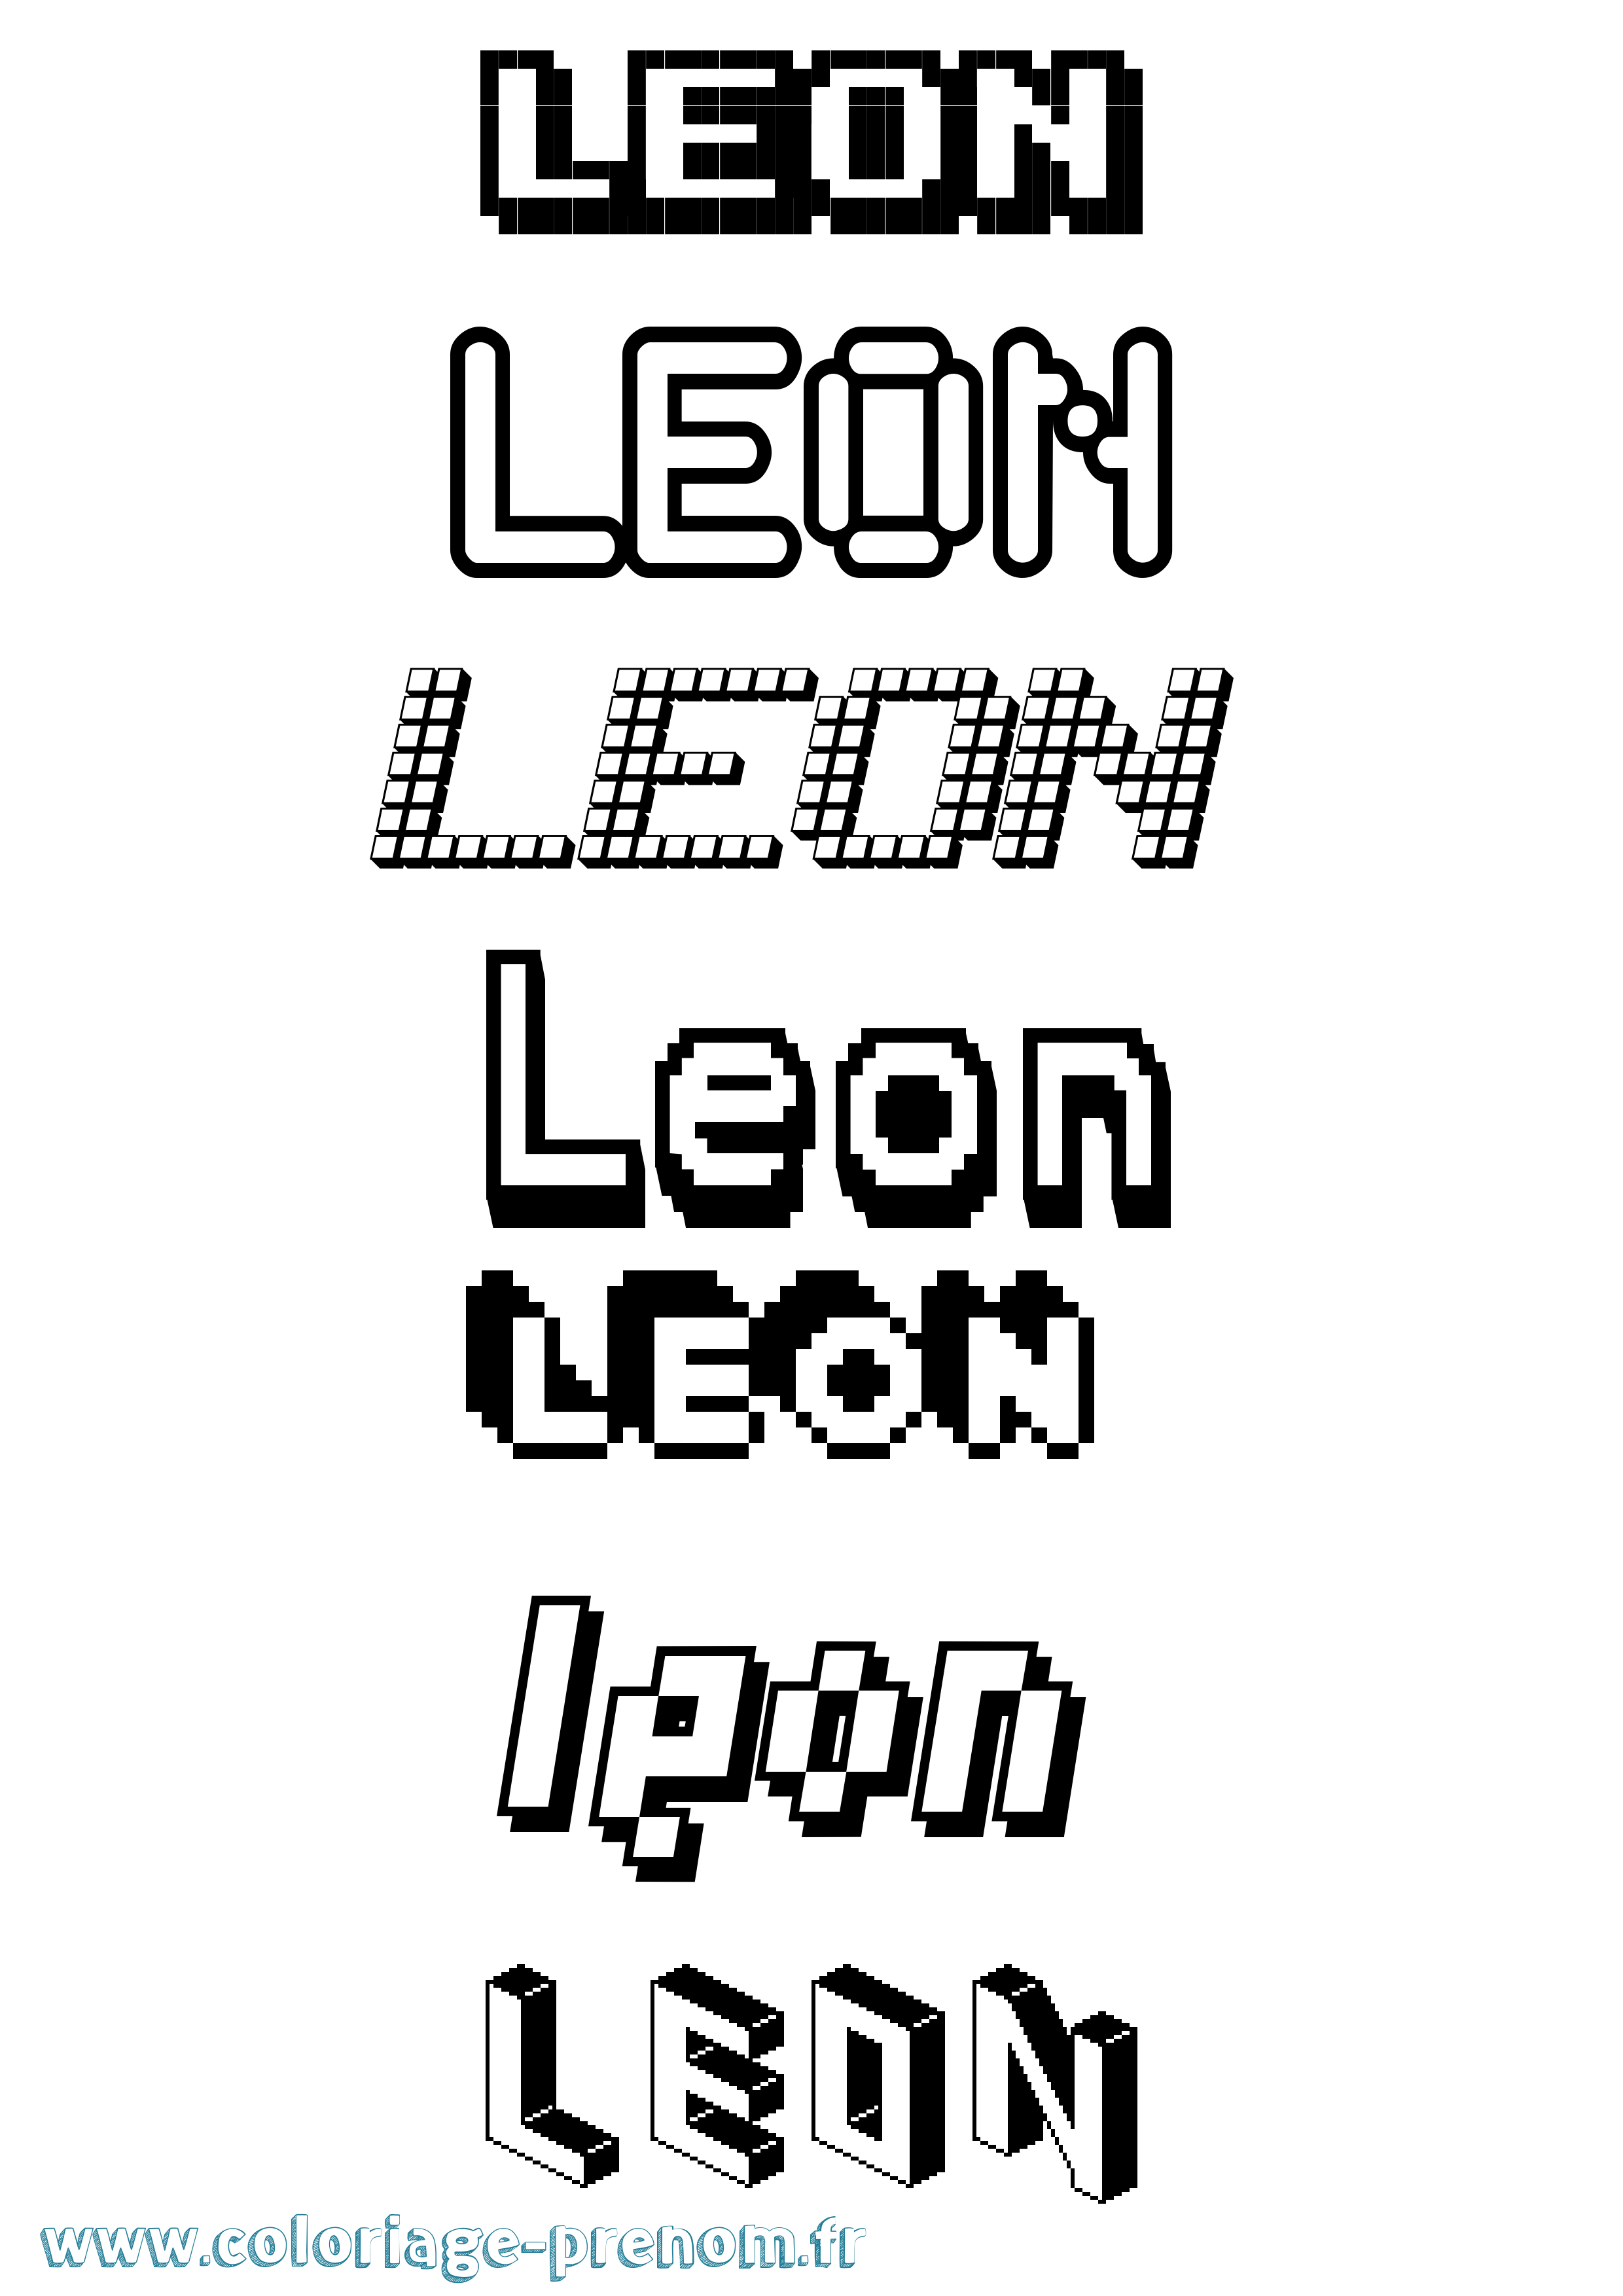 Coloriage prénom Leon